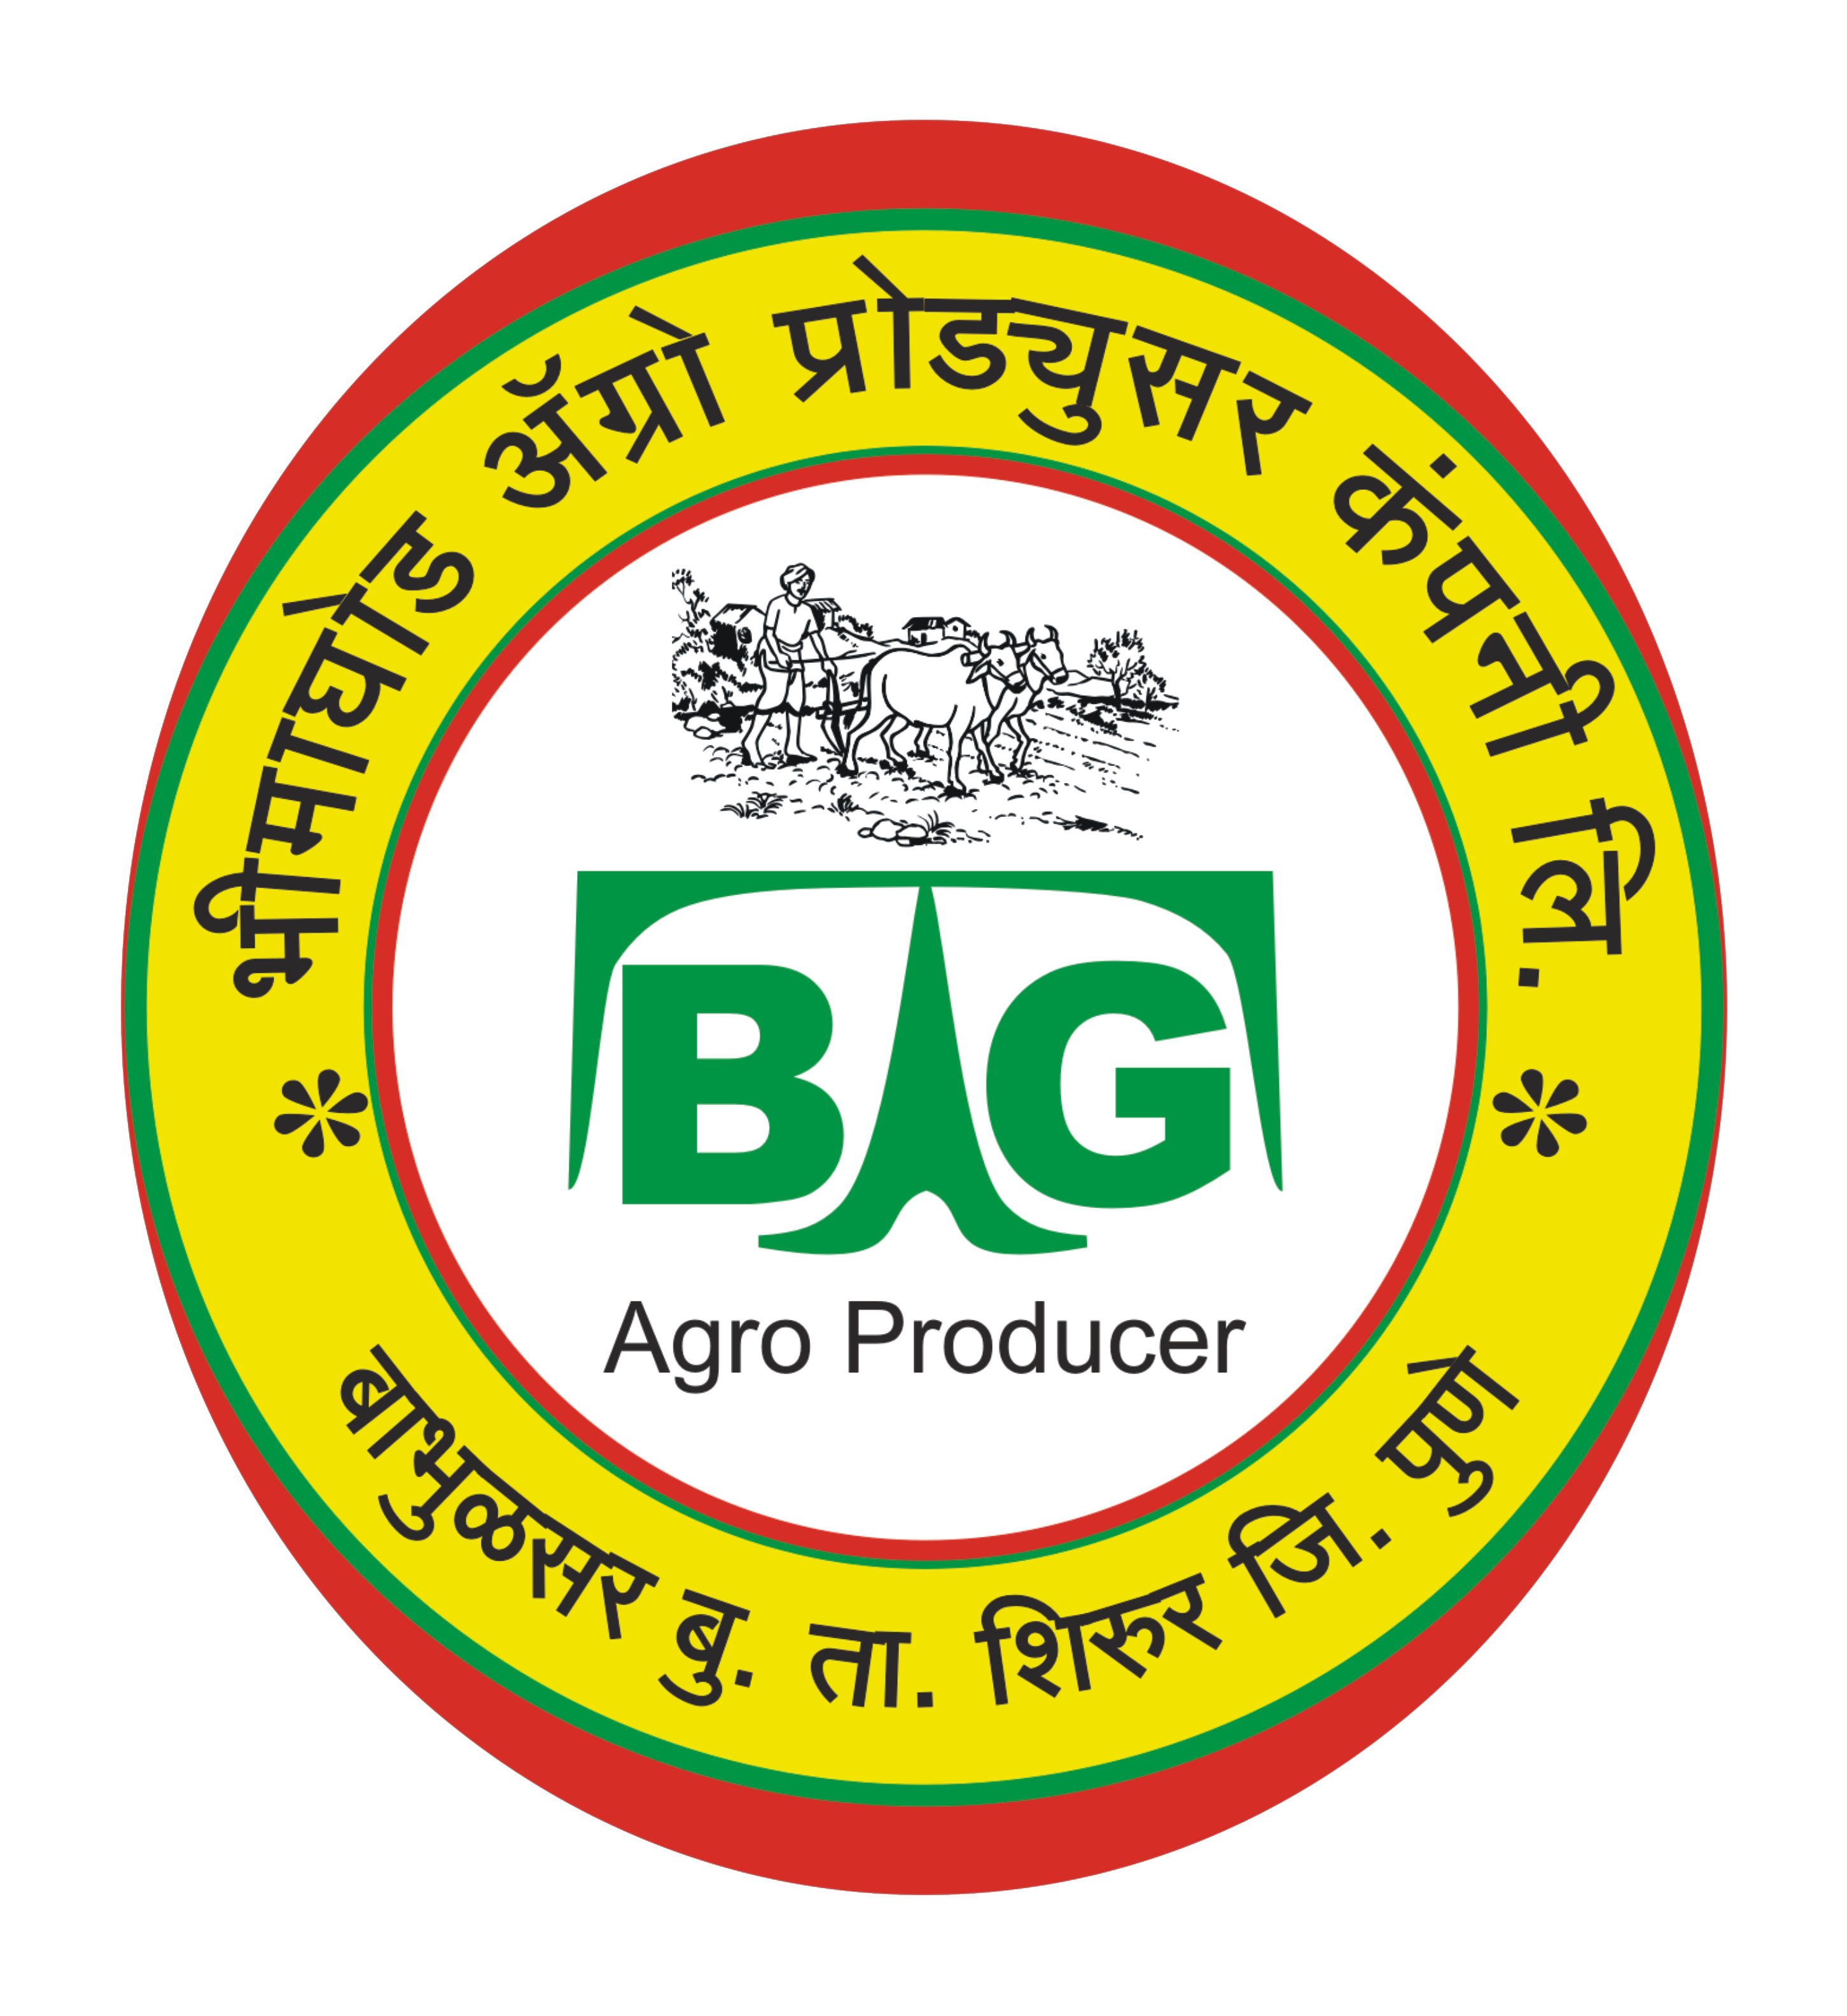 bhimaghod farmer producer company LTD